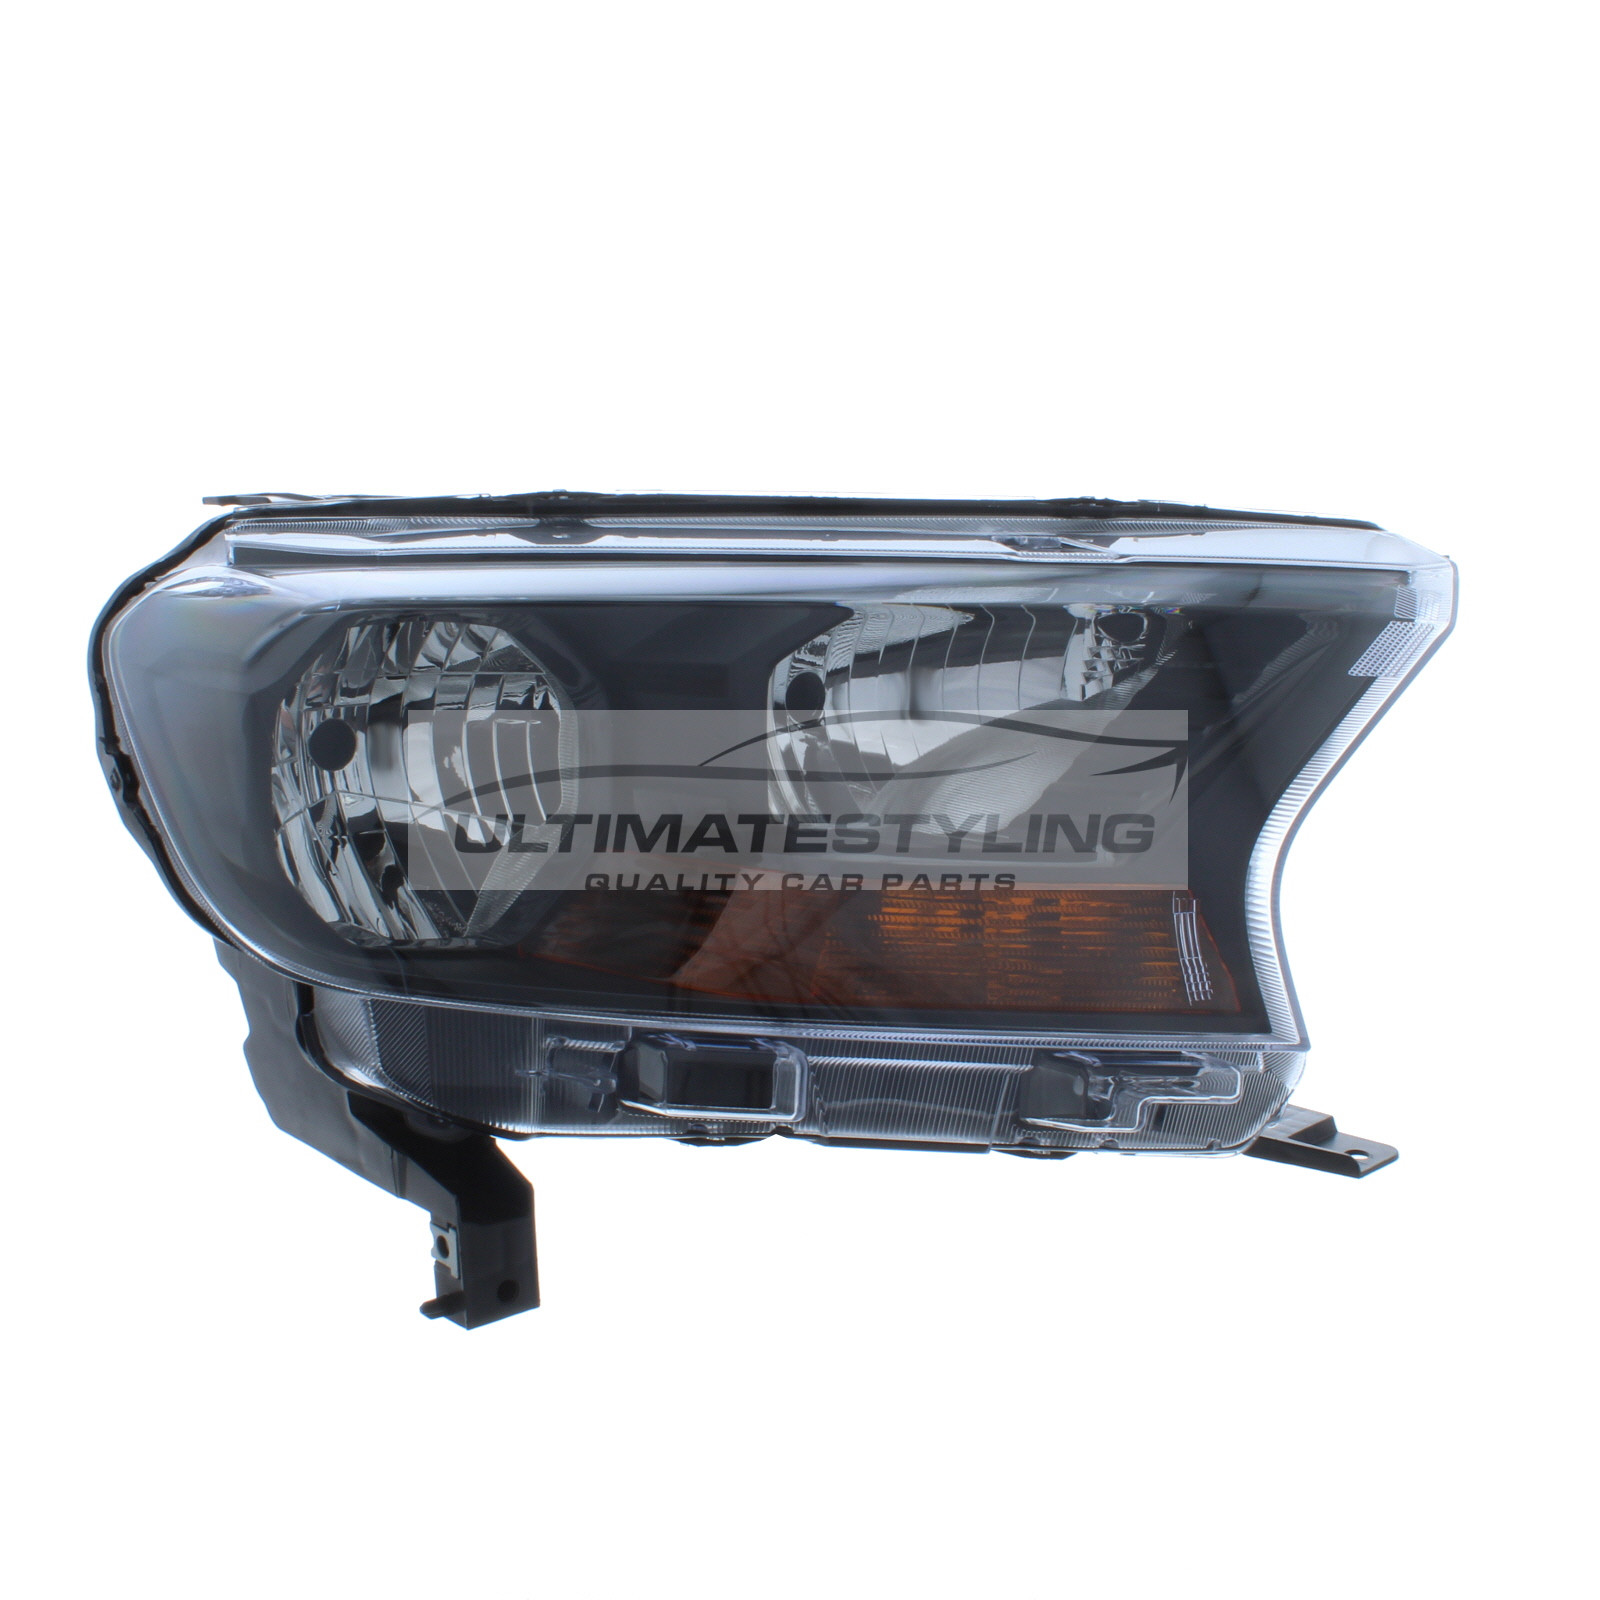 Headlight / Headlamp for Ford Ranger